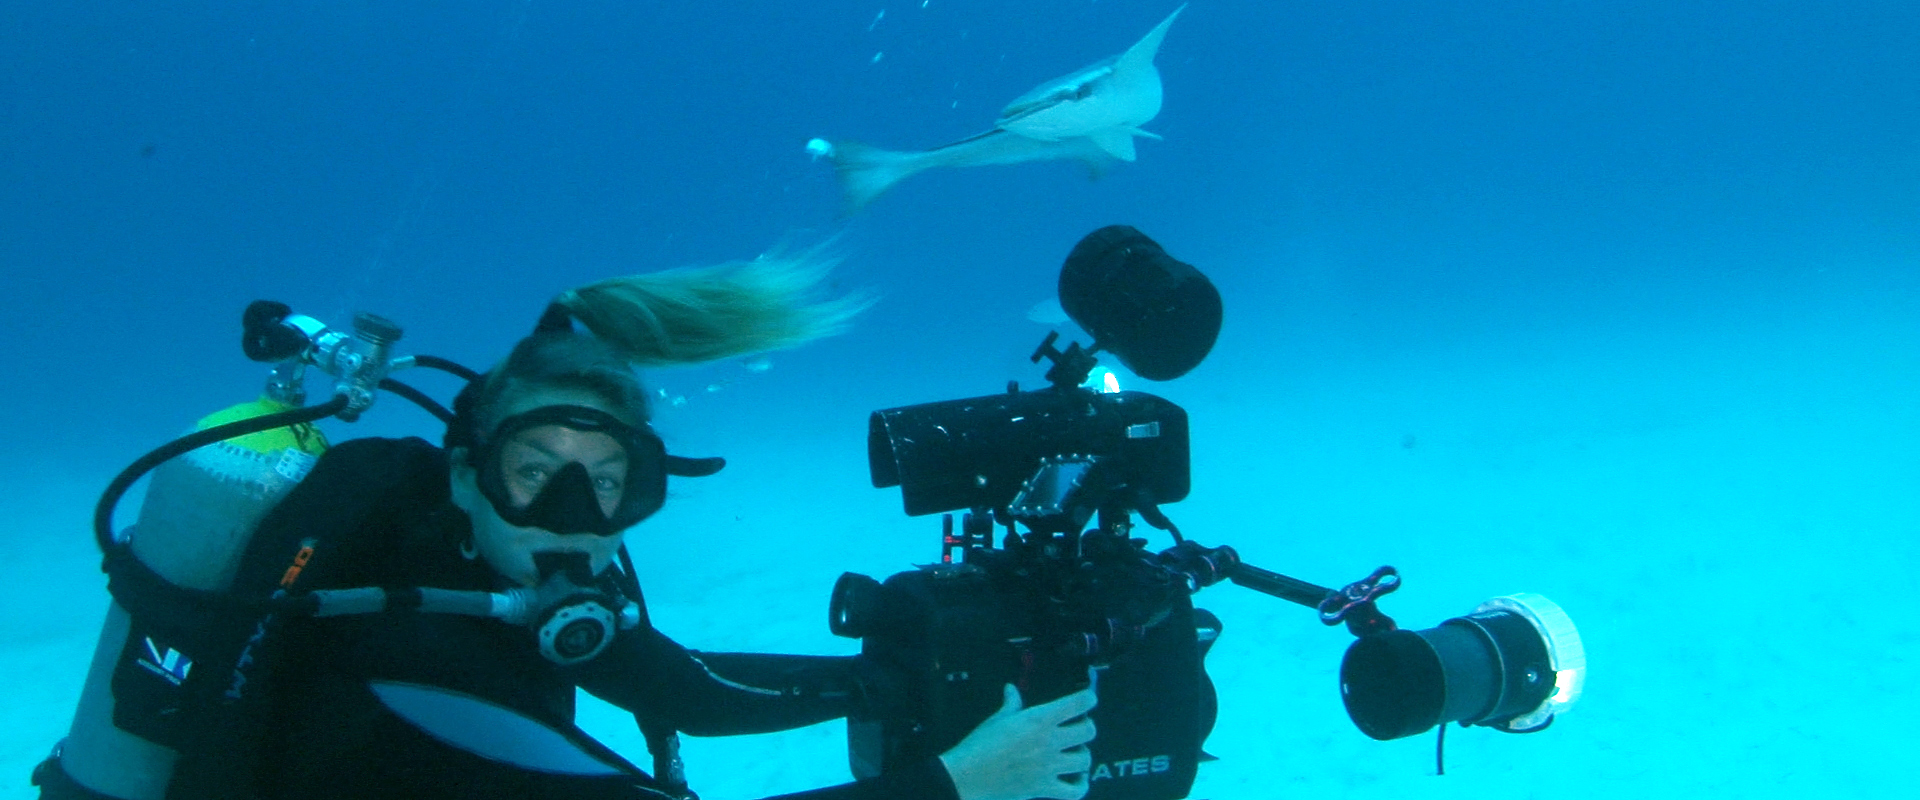 Anna-2 Underwater Filmmaker Course - Liquid Motion Underwater Videography Photography Film School 1920x800